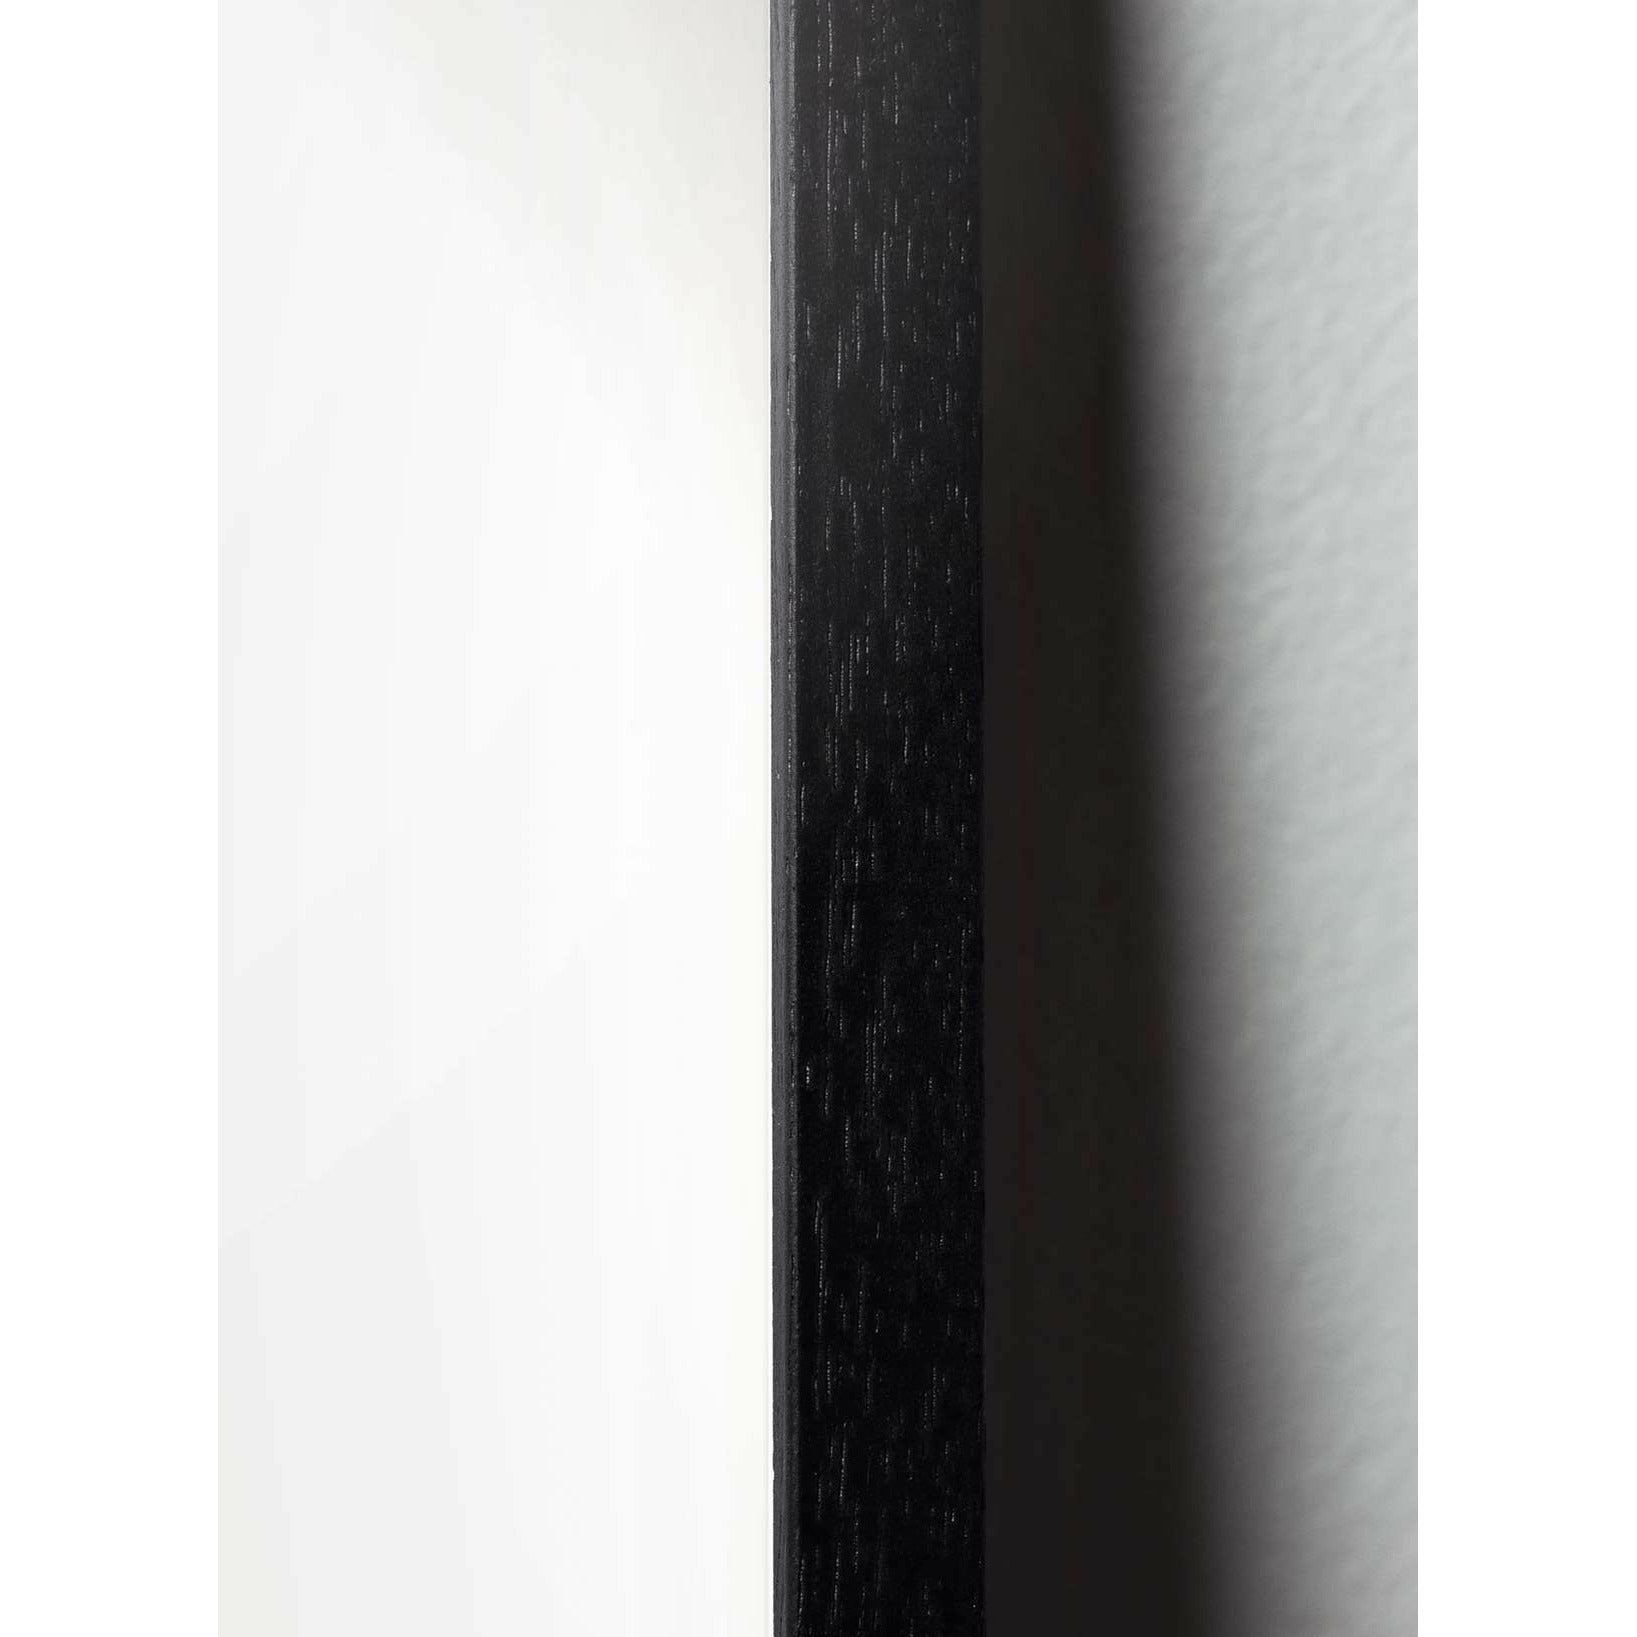 Pomysły plakat linii mrówek, rama w czarnym lakierowanym drewnie A5, białe tło